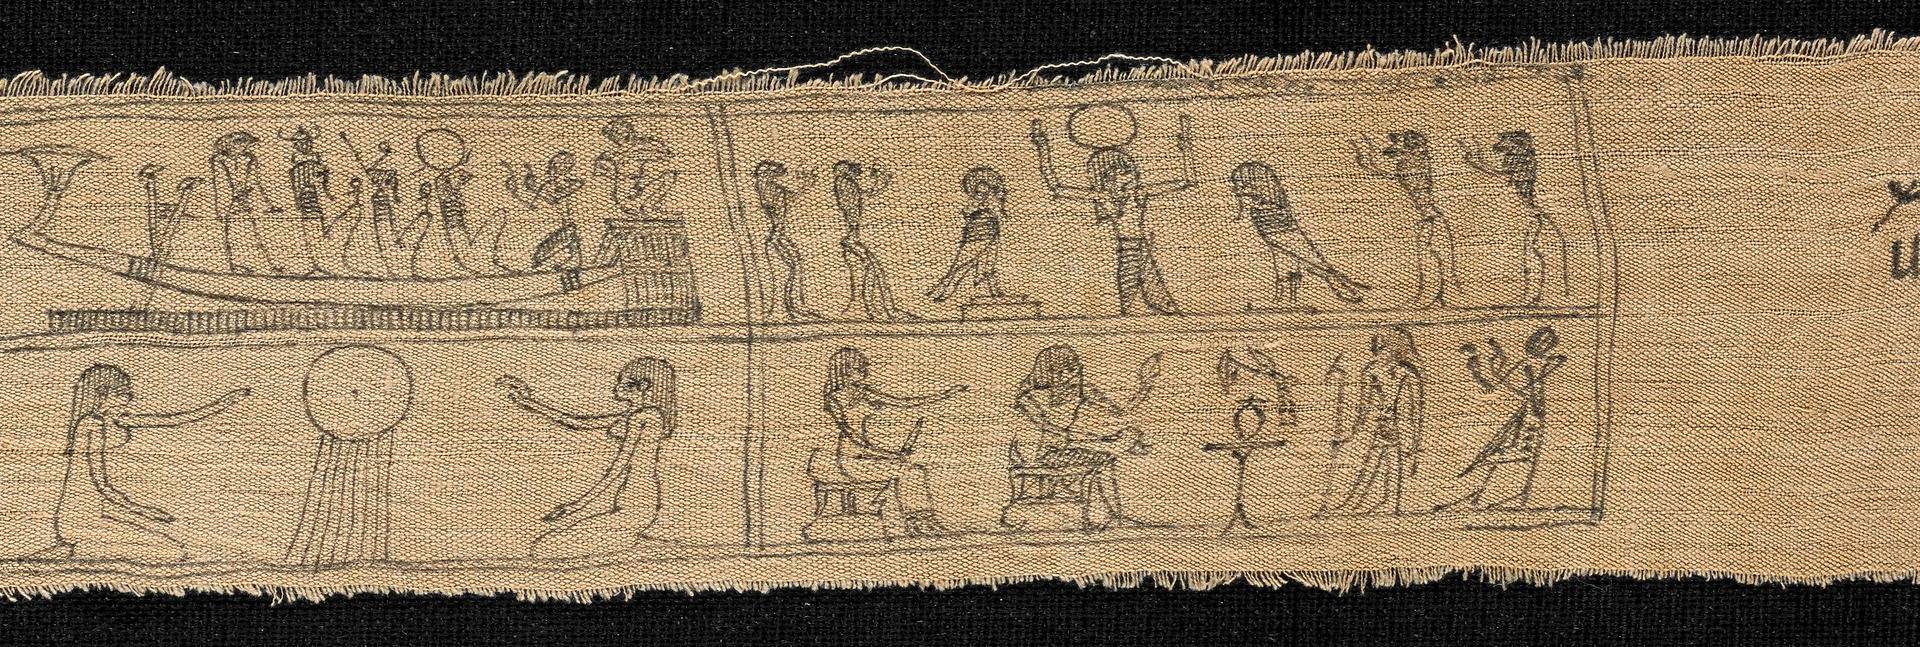 $!Un fragmento de los pergaminos funerarios egipcios conocidos como el Libro de los Muertos.